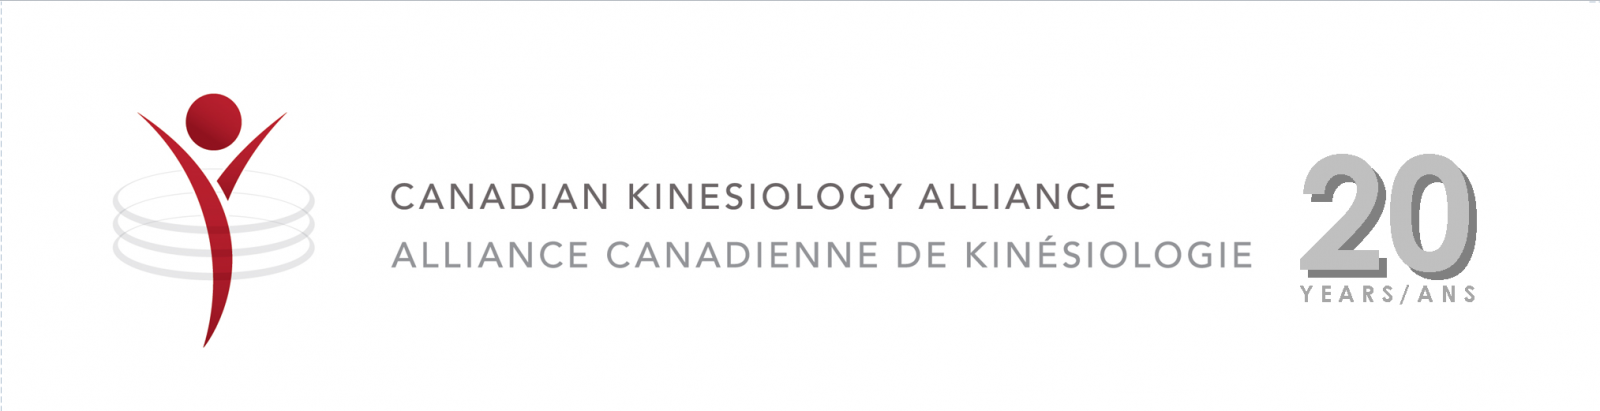 Alliance Canadienne de Kinésiologie